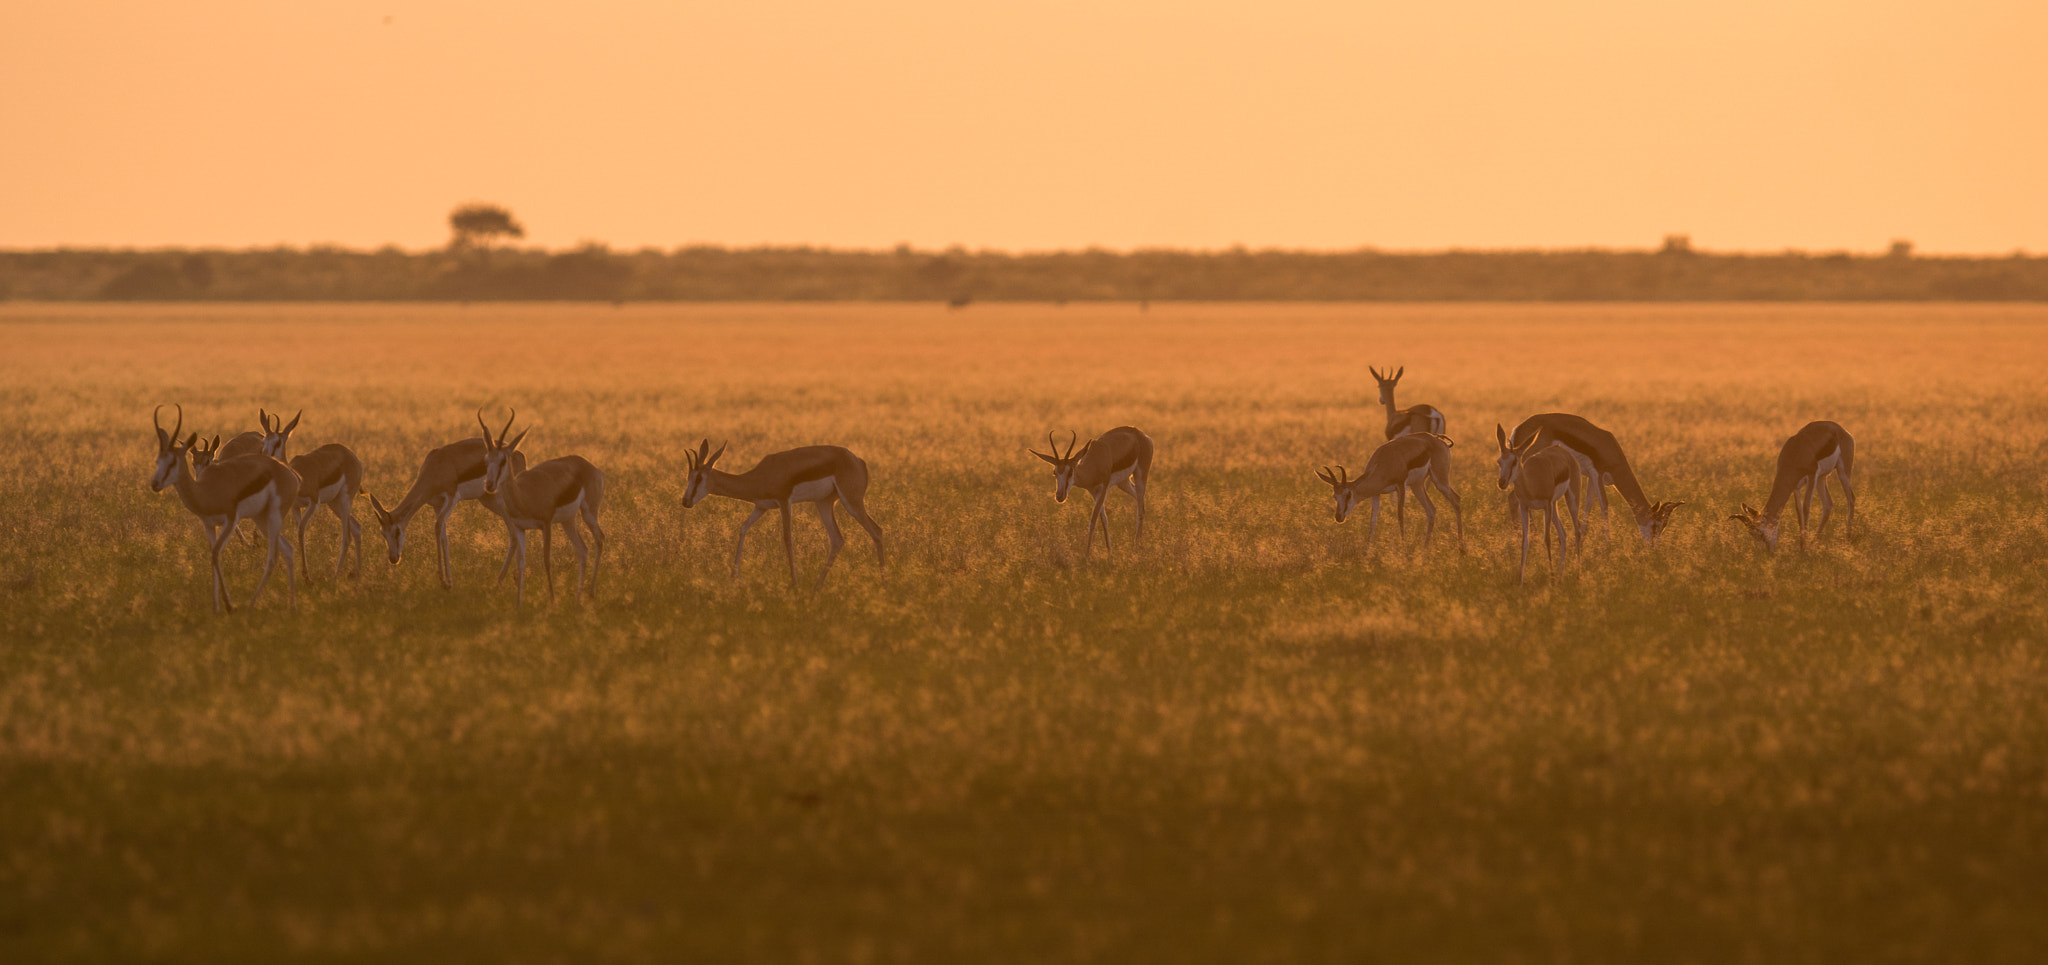 300mm F2.8 G sample photo. Kalahari sunrise photography